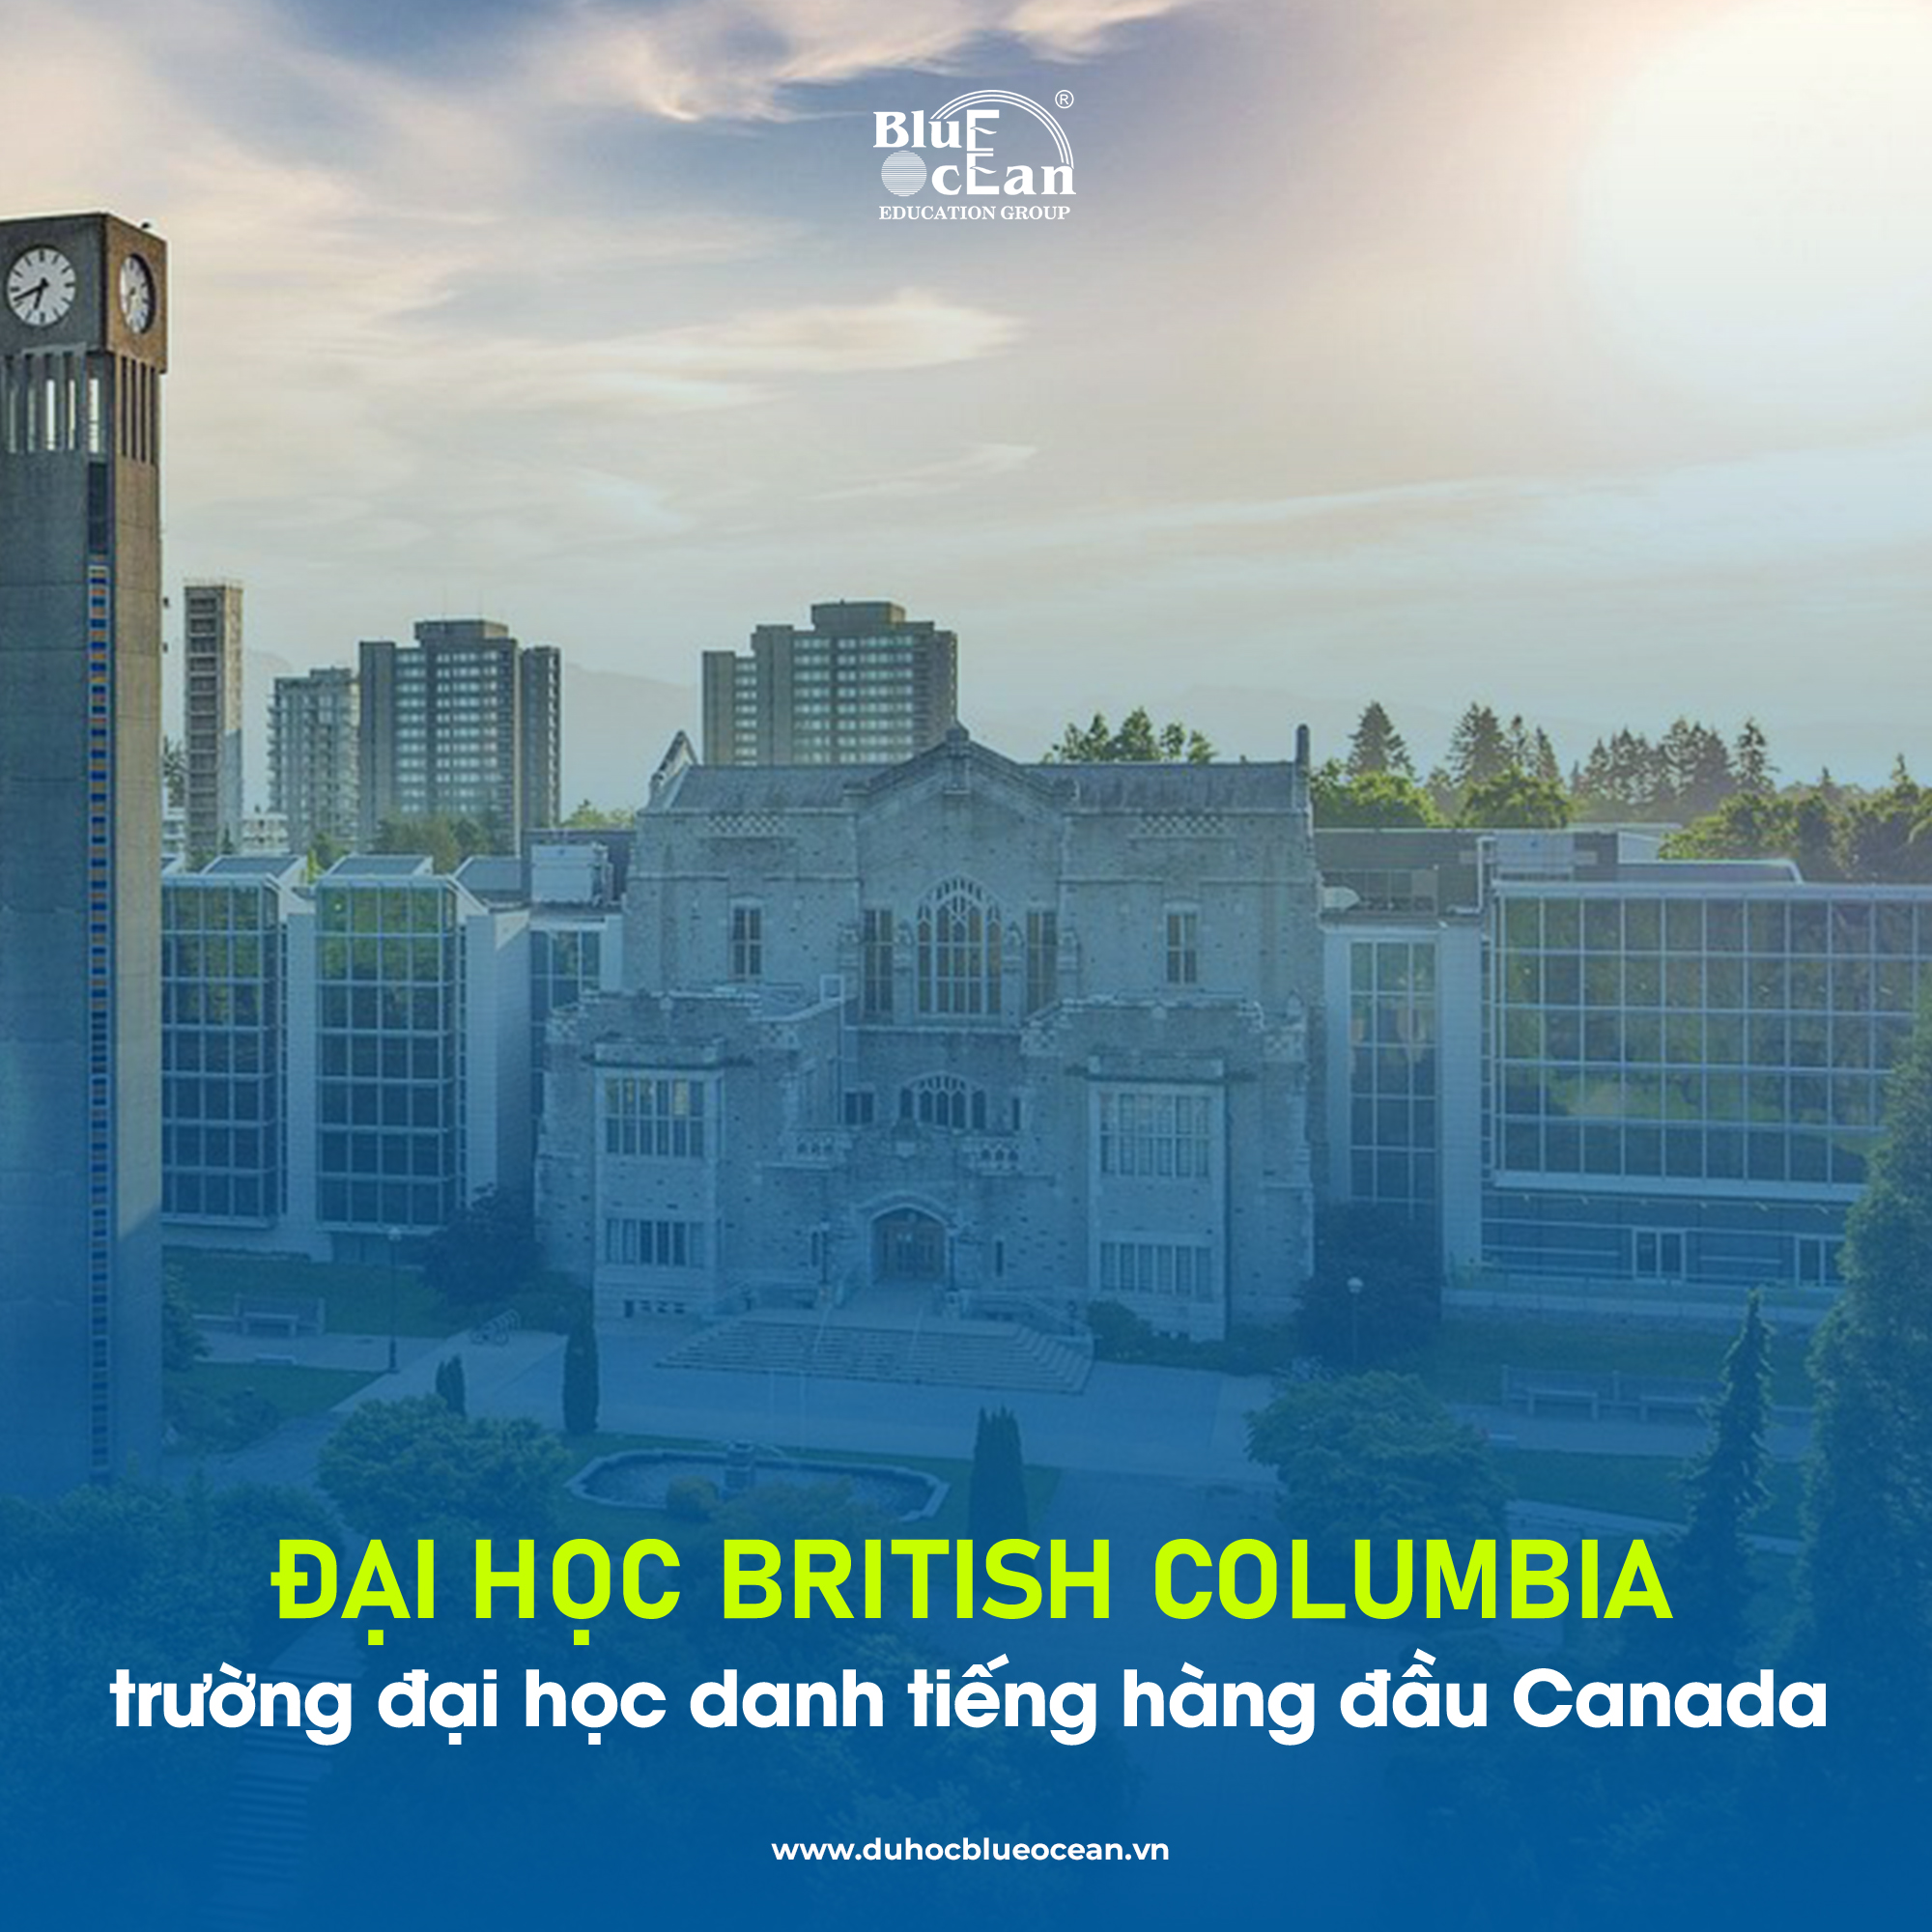 BRITISH COLUMBIA - NGÔI TRƯỜNG ĐẠI HỌC HÀNG ĐẦU CANADA